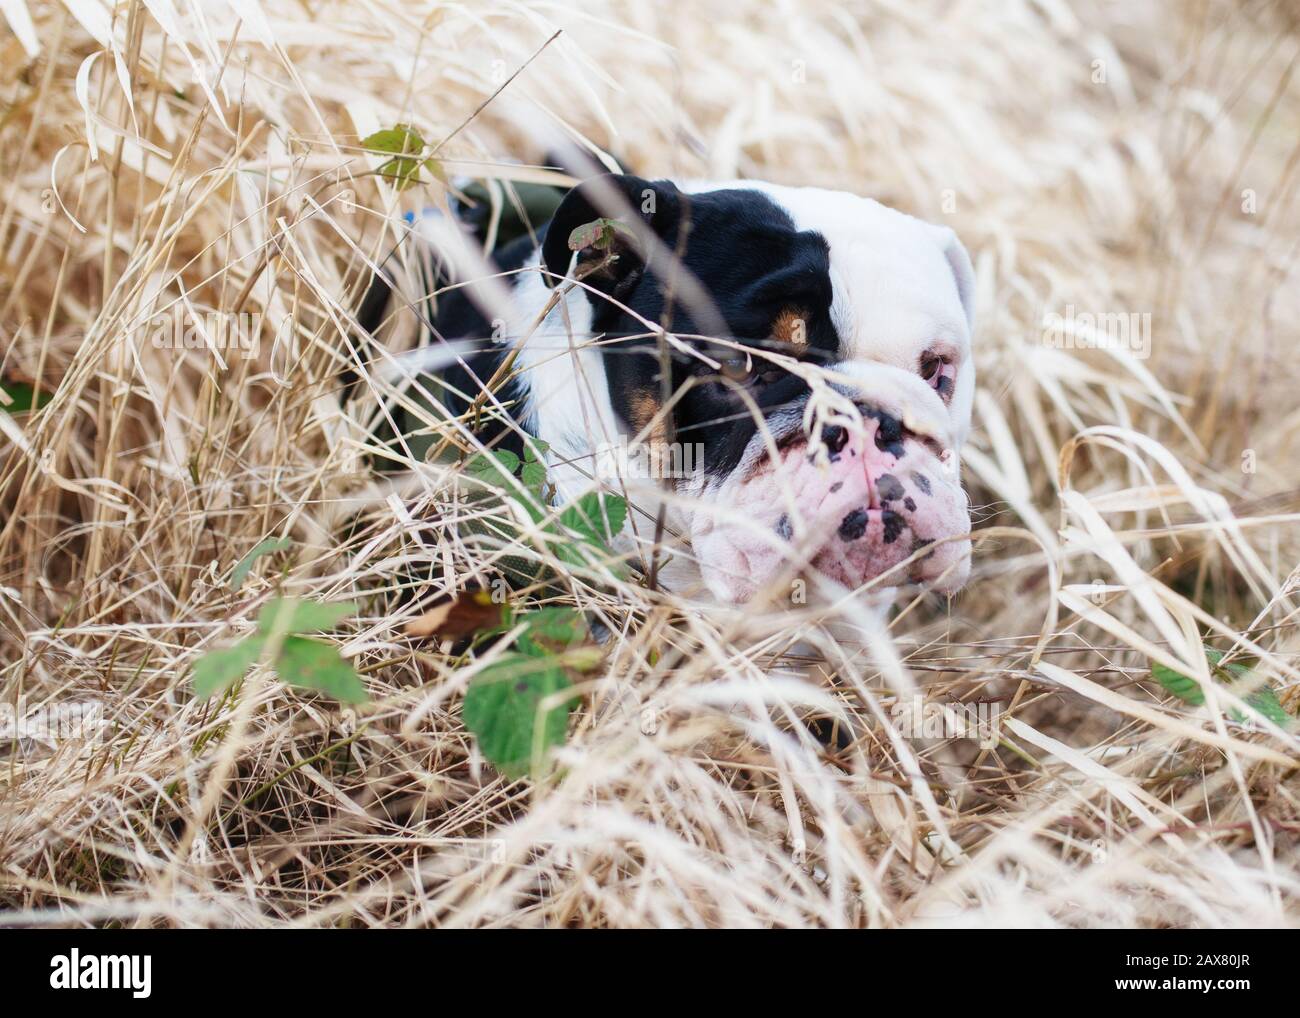 Chien noir et blanc anglais/britannique Bulldog dehors pour une promenade assis dans l'herbe et regarder l'appareil photo Banque D'Images